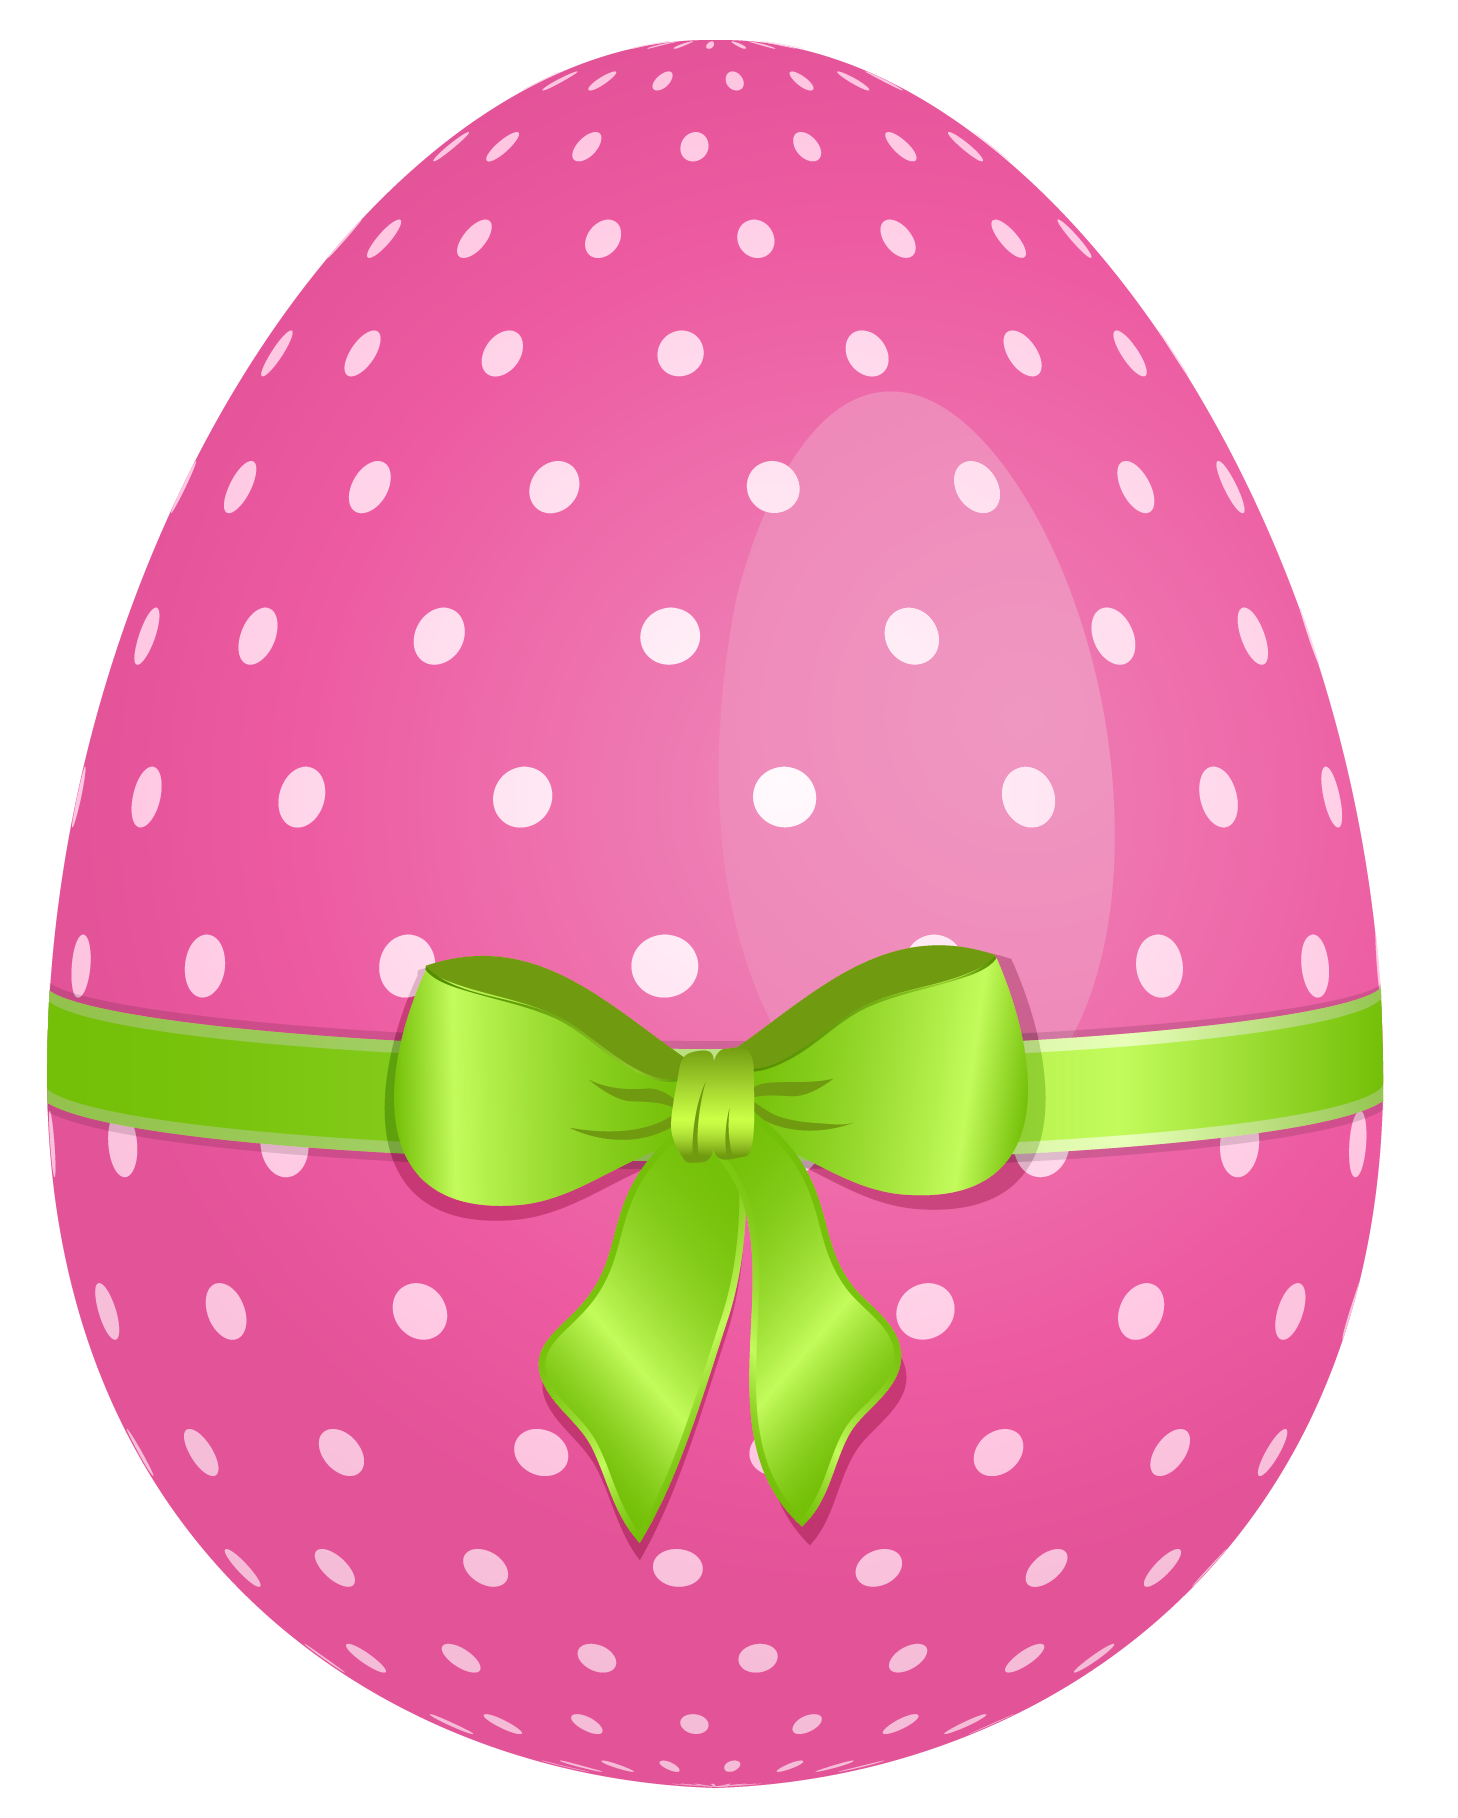 Free easter egg clip art imag - Free Easter Egg Clip Art